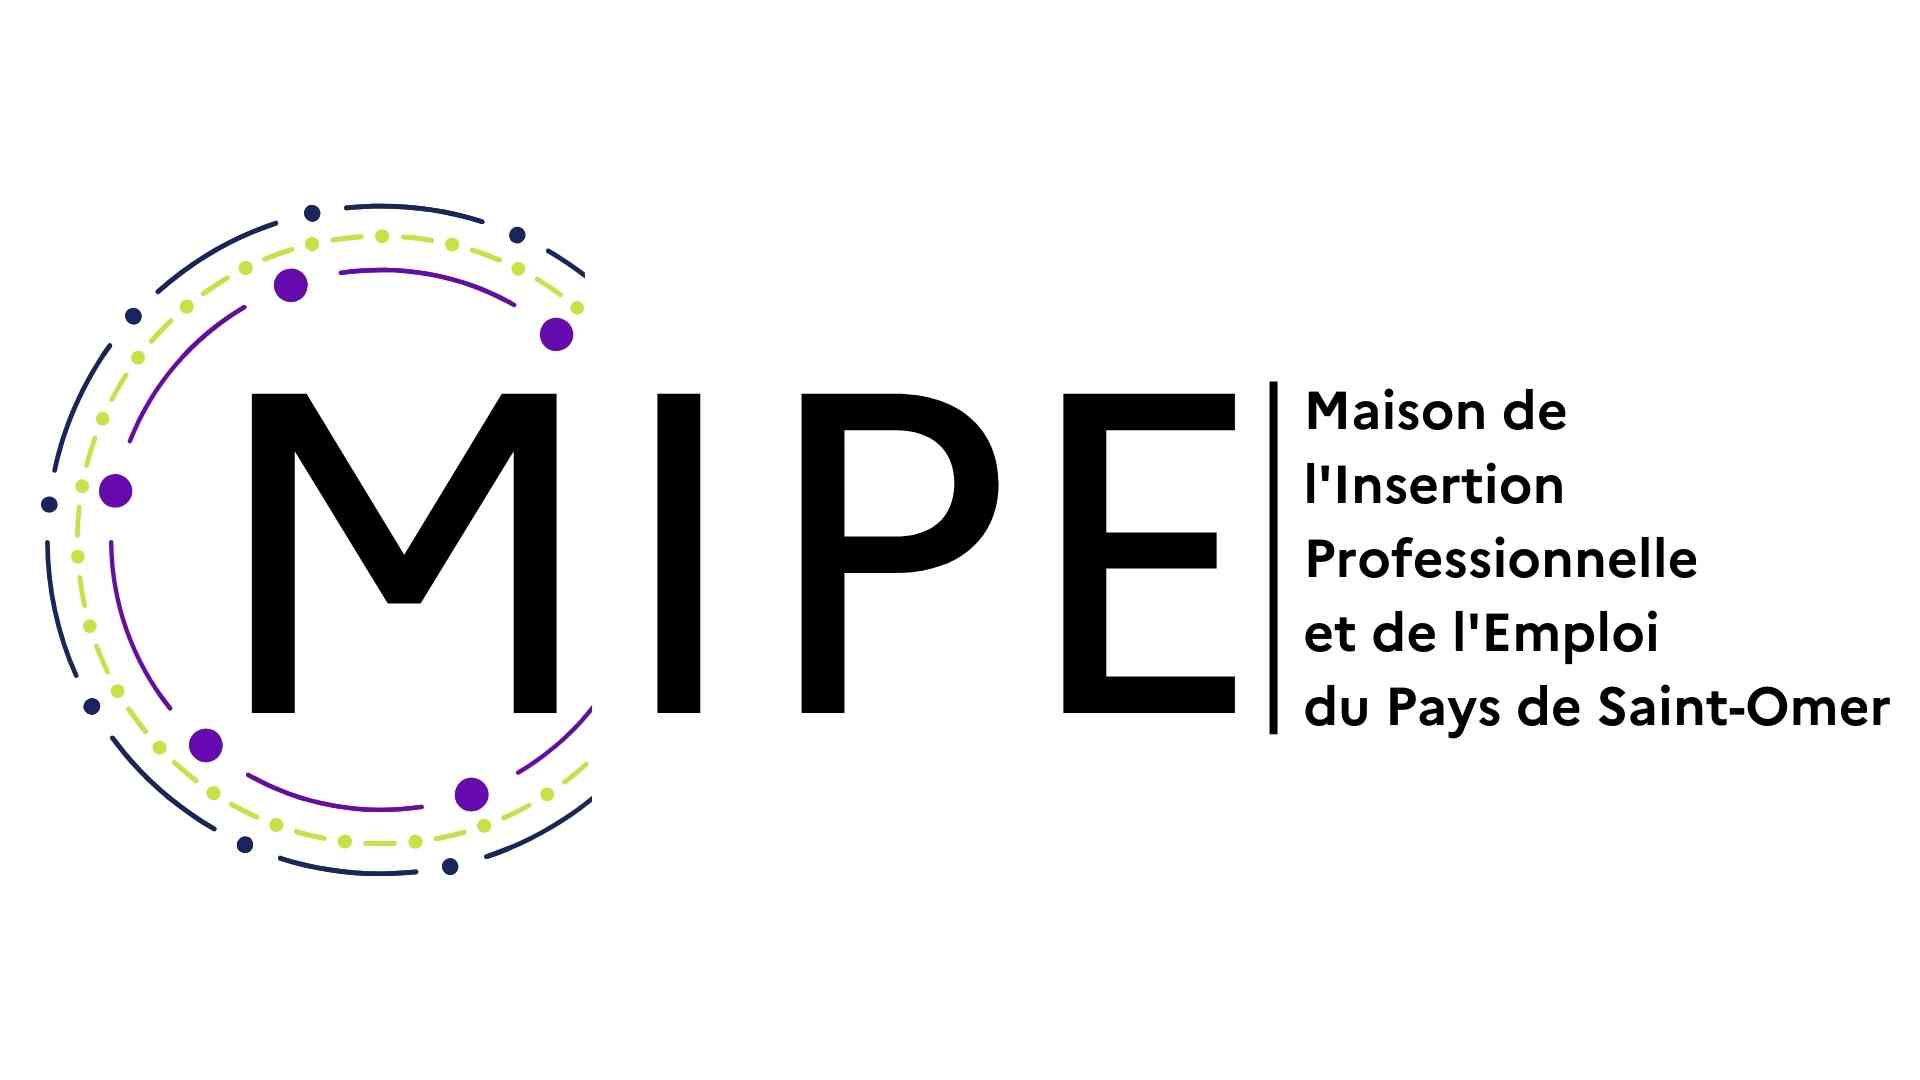 La maison de l’insertion professionnelle et de l’emploi du Pays de St Omer (MIPE)